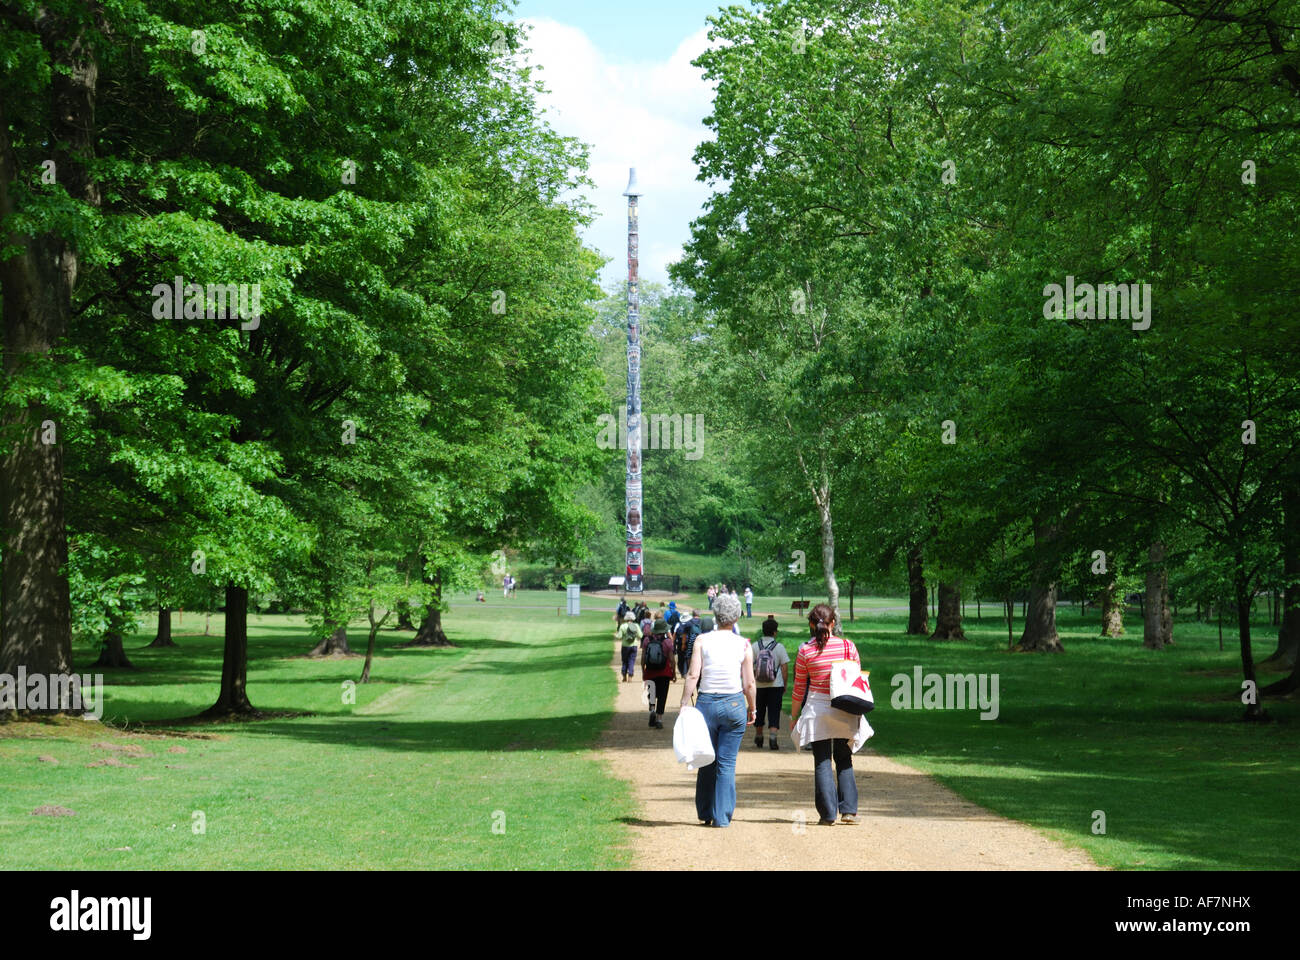 Groupe sur le chemin, la Vallée des jardins, le paysage, Royal Windsor Great Park, Virginia Water, Surrey, Angleterre, Royaume-Uni Banque D'Images